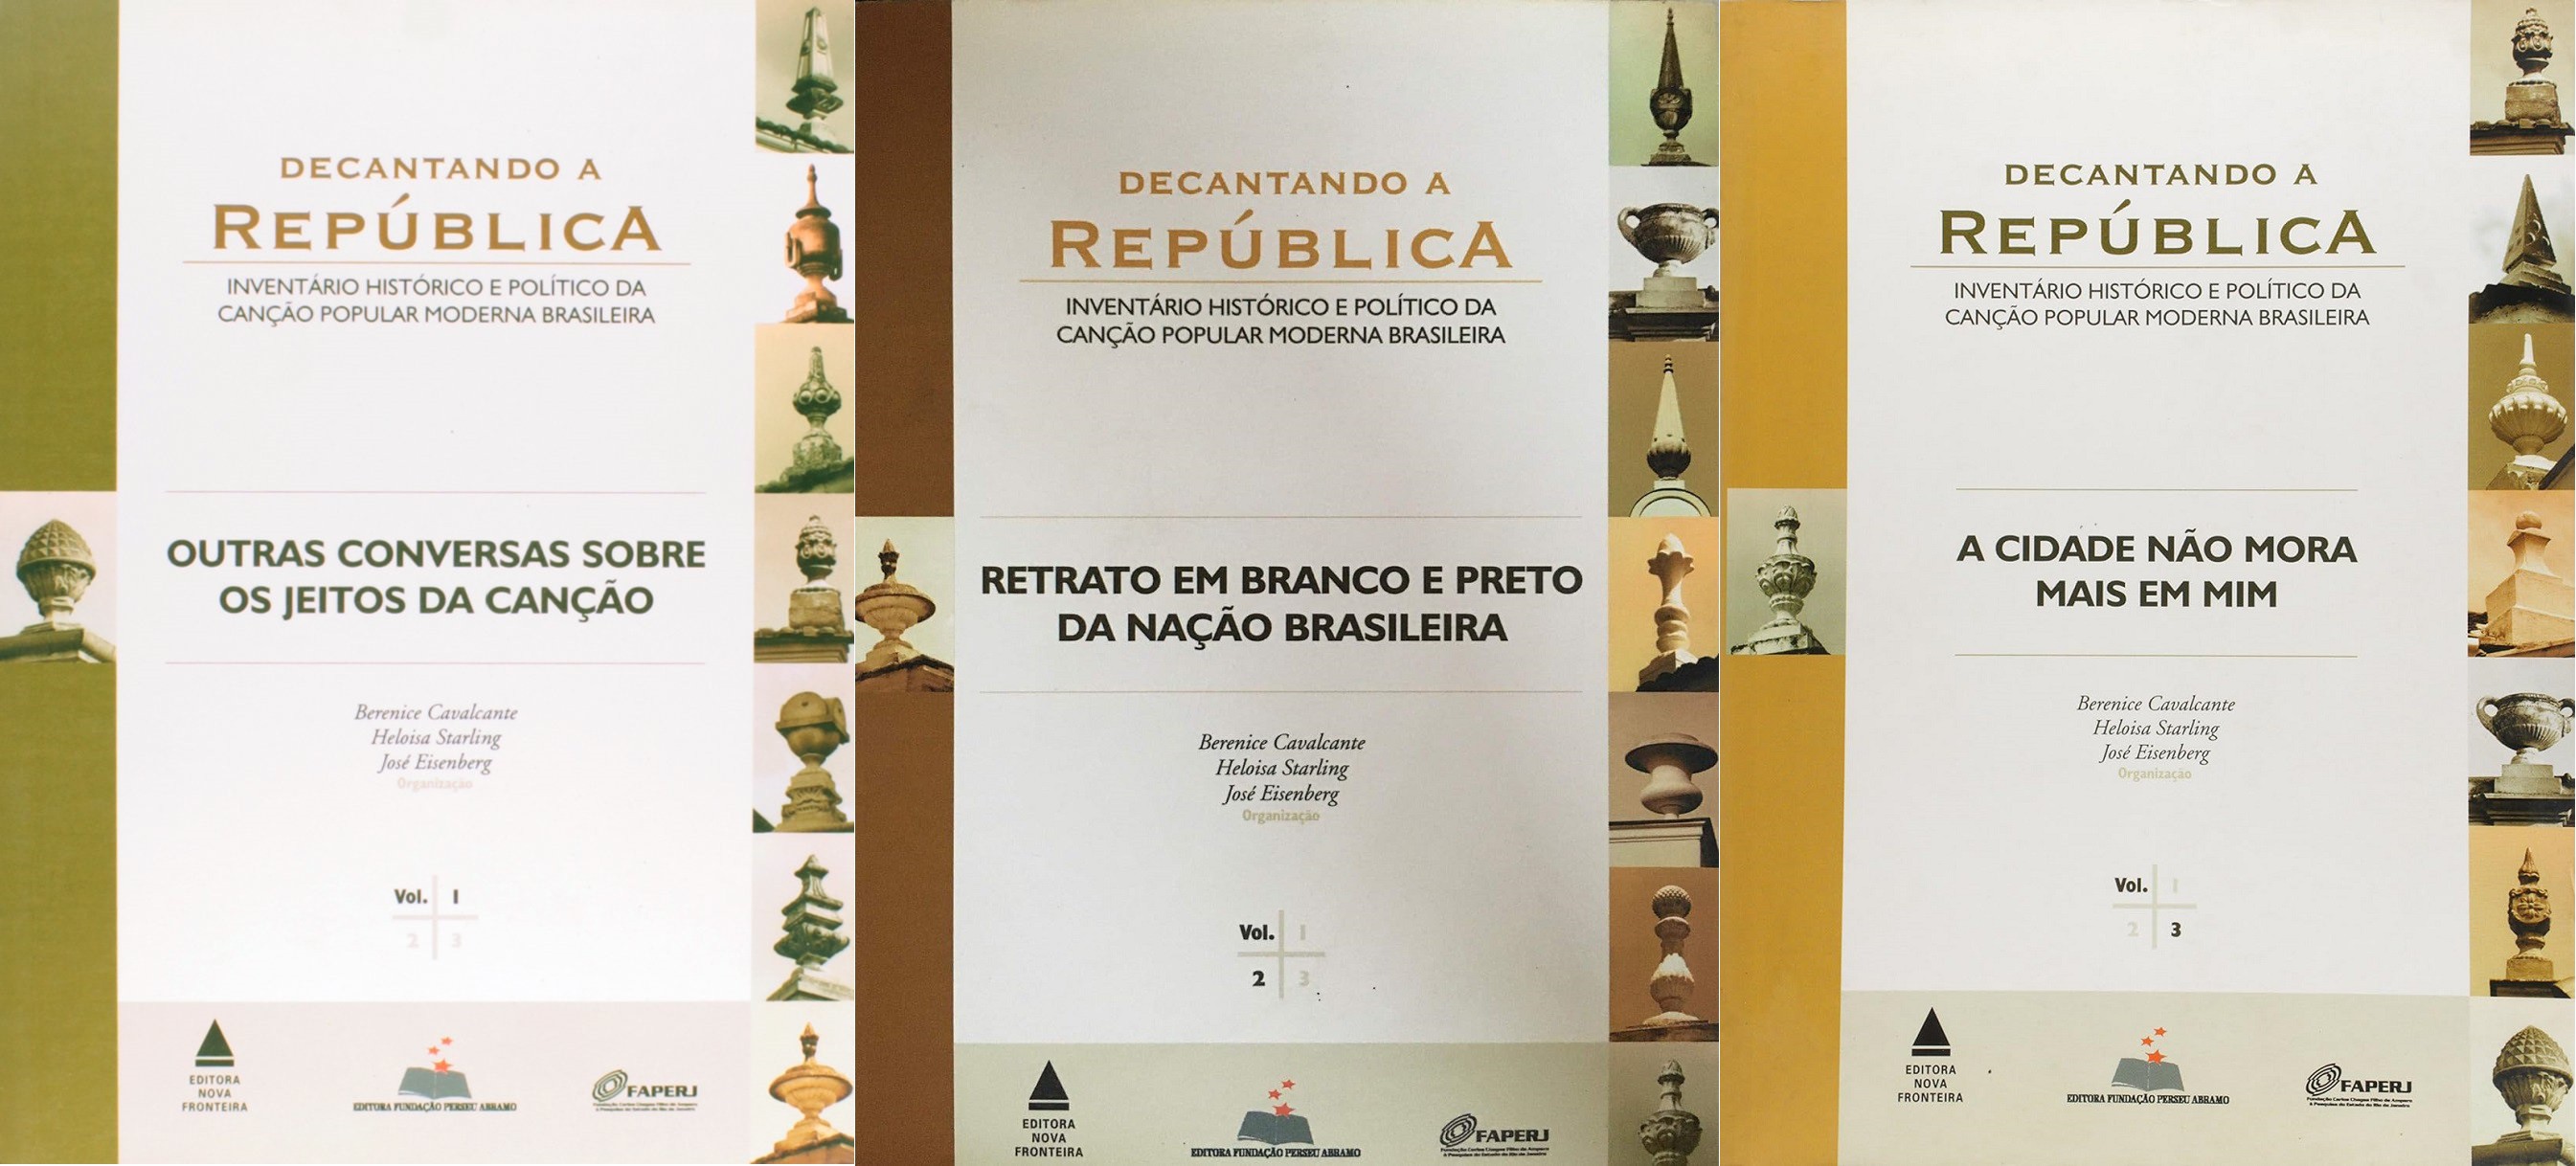 'Decantando a República', série publicada pela Nova Fronteira em parceria com a Fundação Perseu Abramo